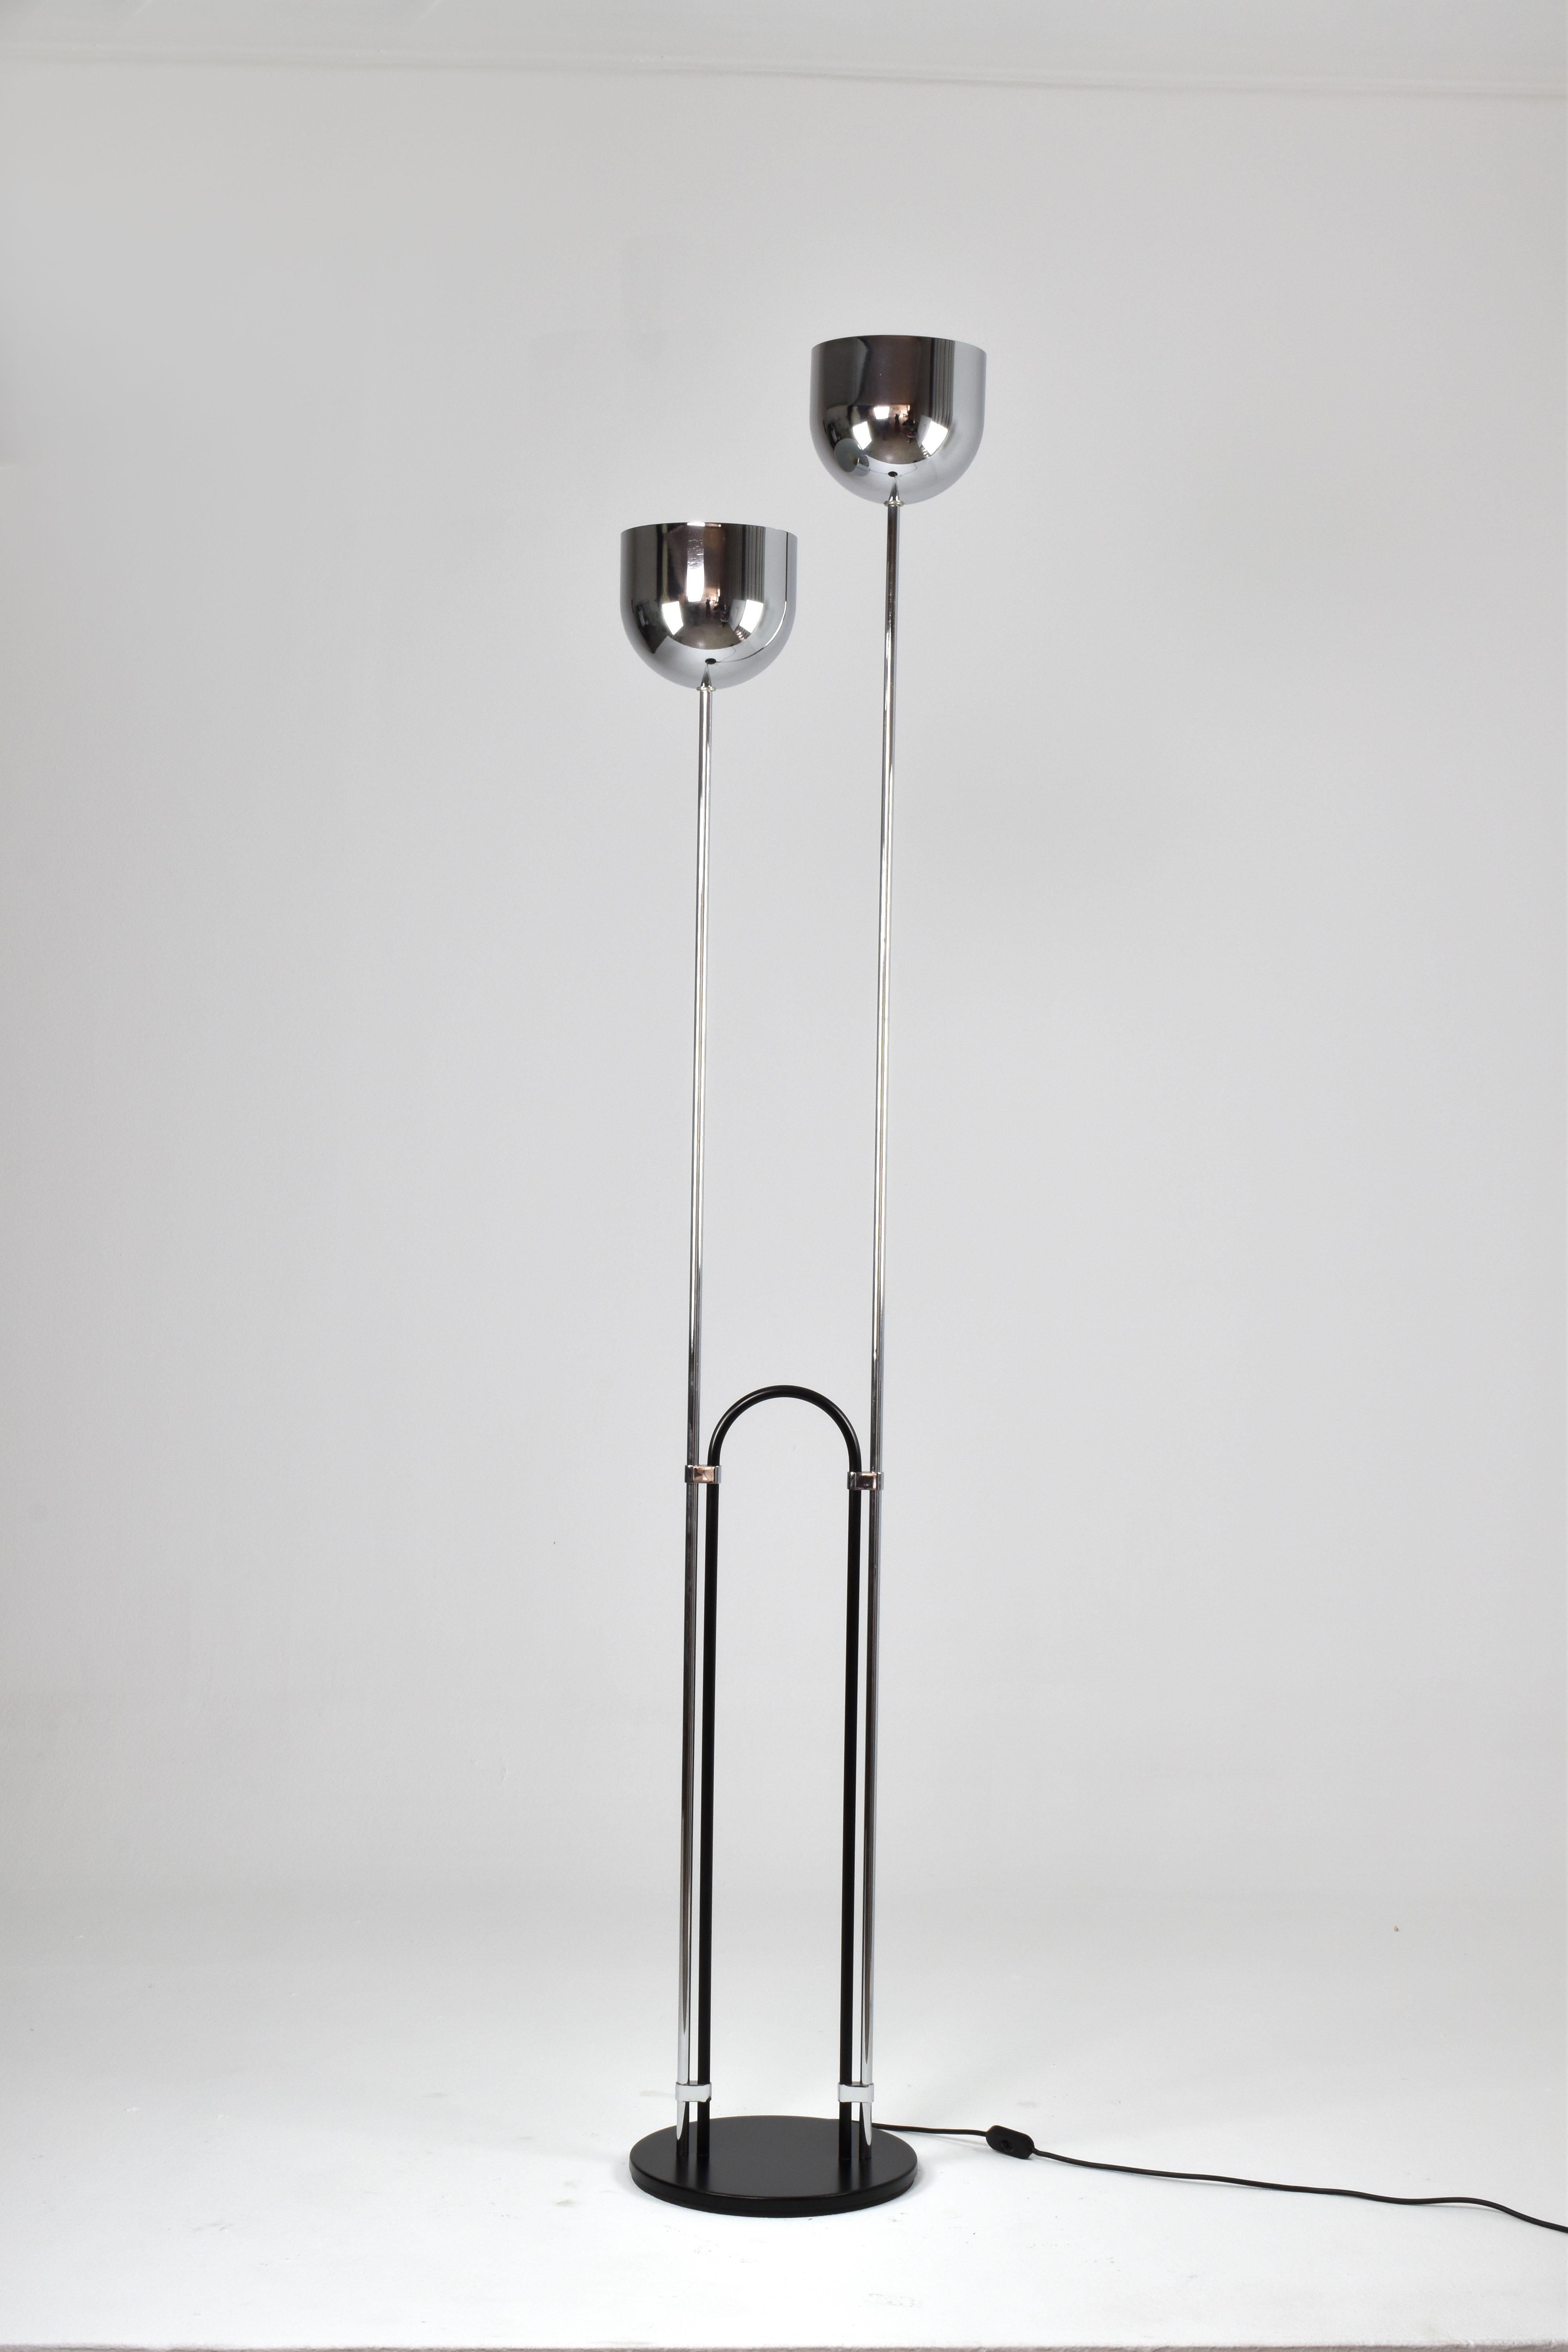 Un élégant lampadaire des années 1970 en Italie, attribué à Reggiani. Cette pièce distinctive comporte deux tiges chromées avec des abat-jour orientés vers le haut, projetant une lumière douce et ambiante vers le plafond. Ces tiges sont reliées par